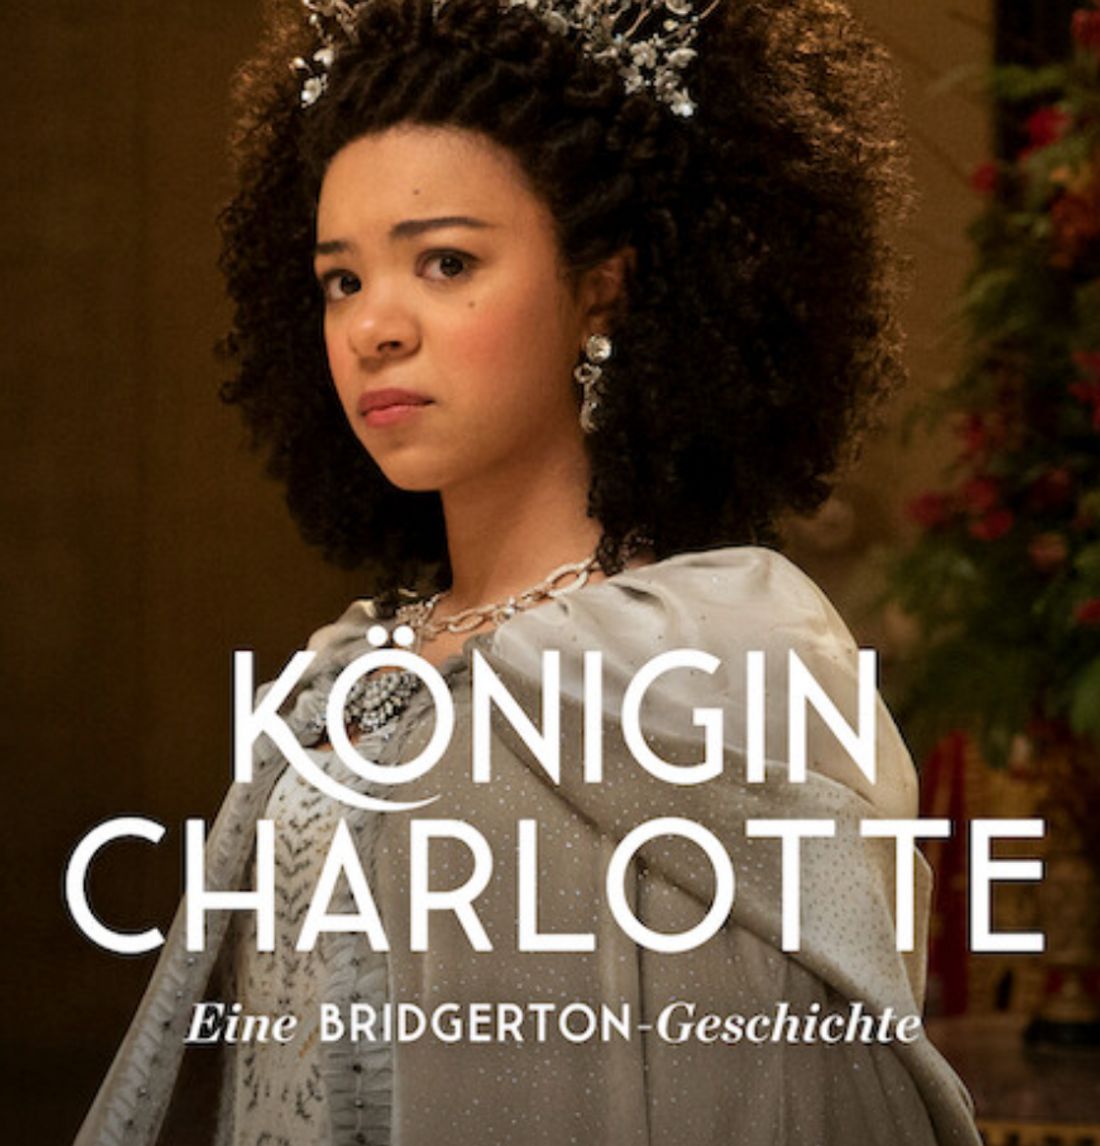 Königin Charlotte: Eine Bridgerton-Geschichte: Alle Infos zur neuen Serie!